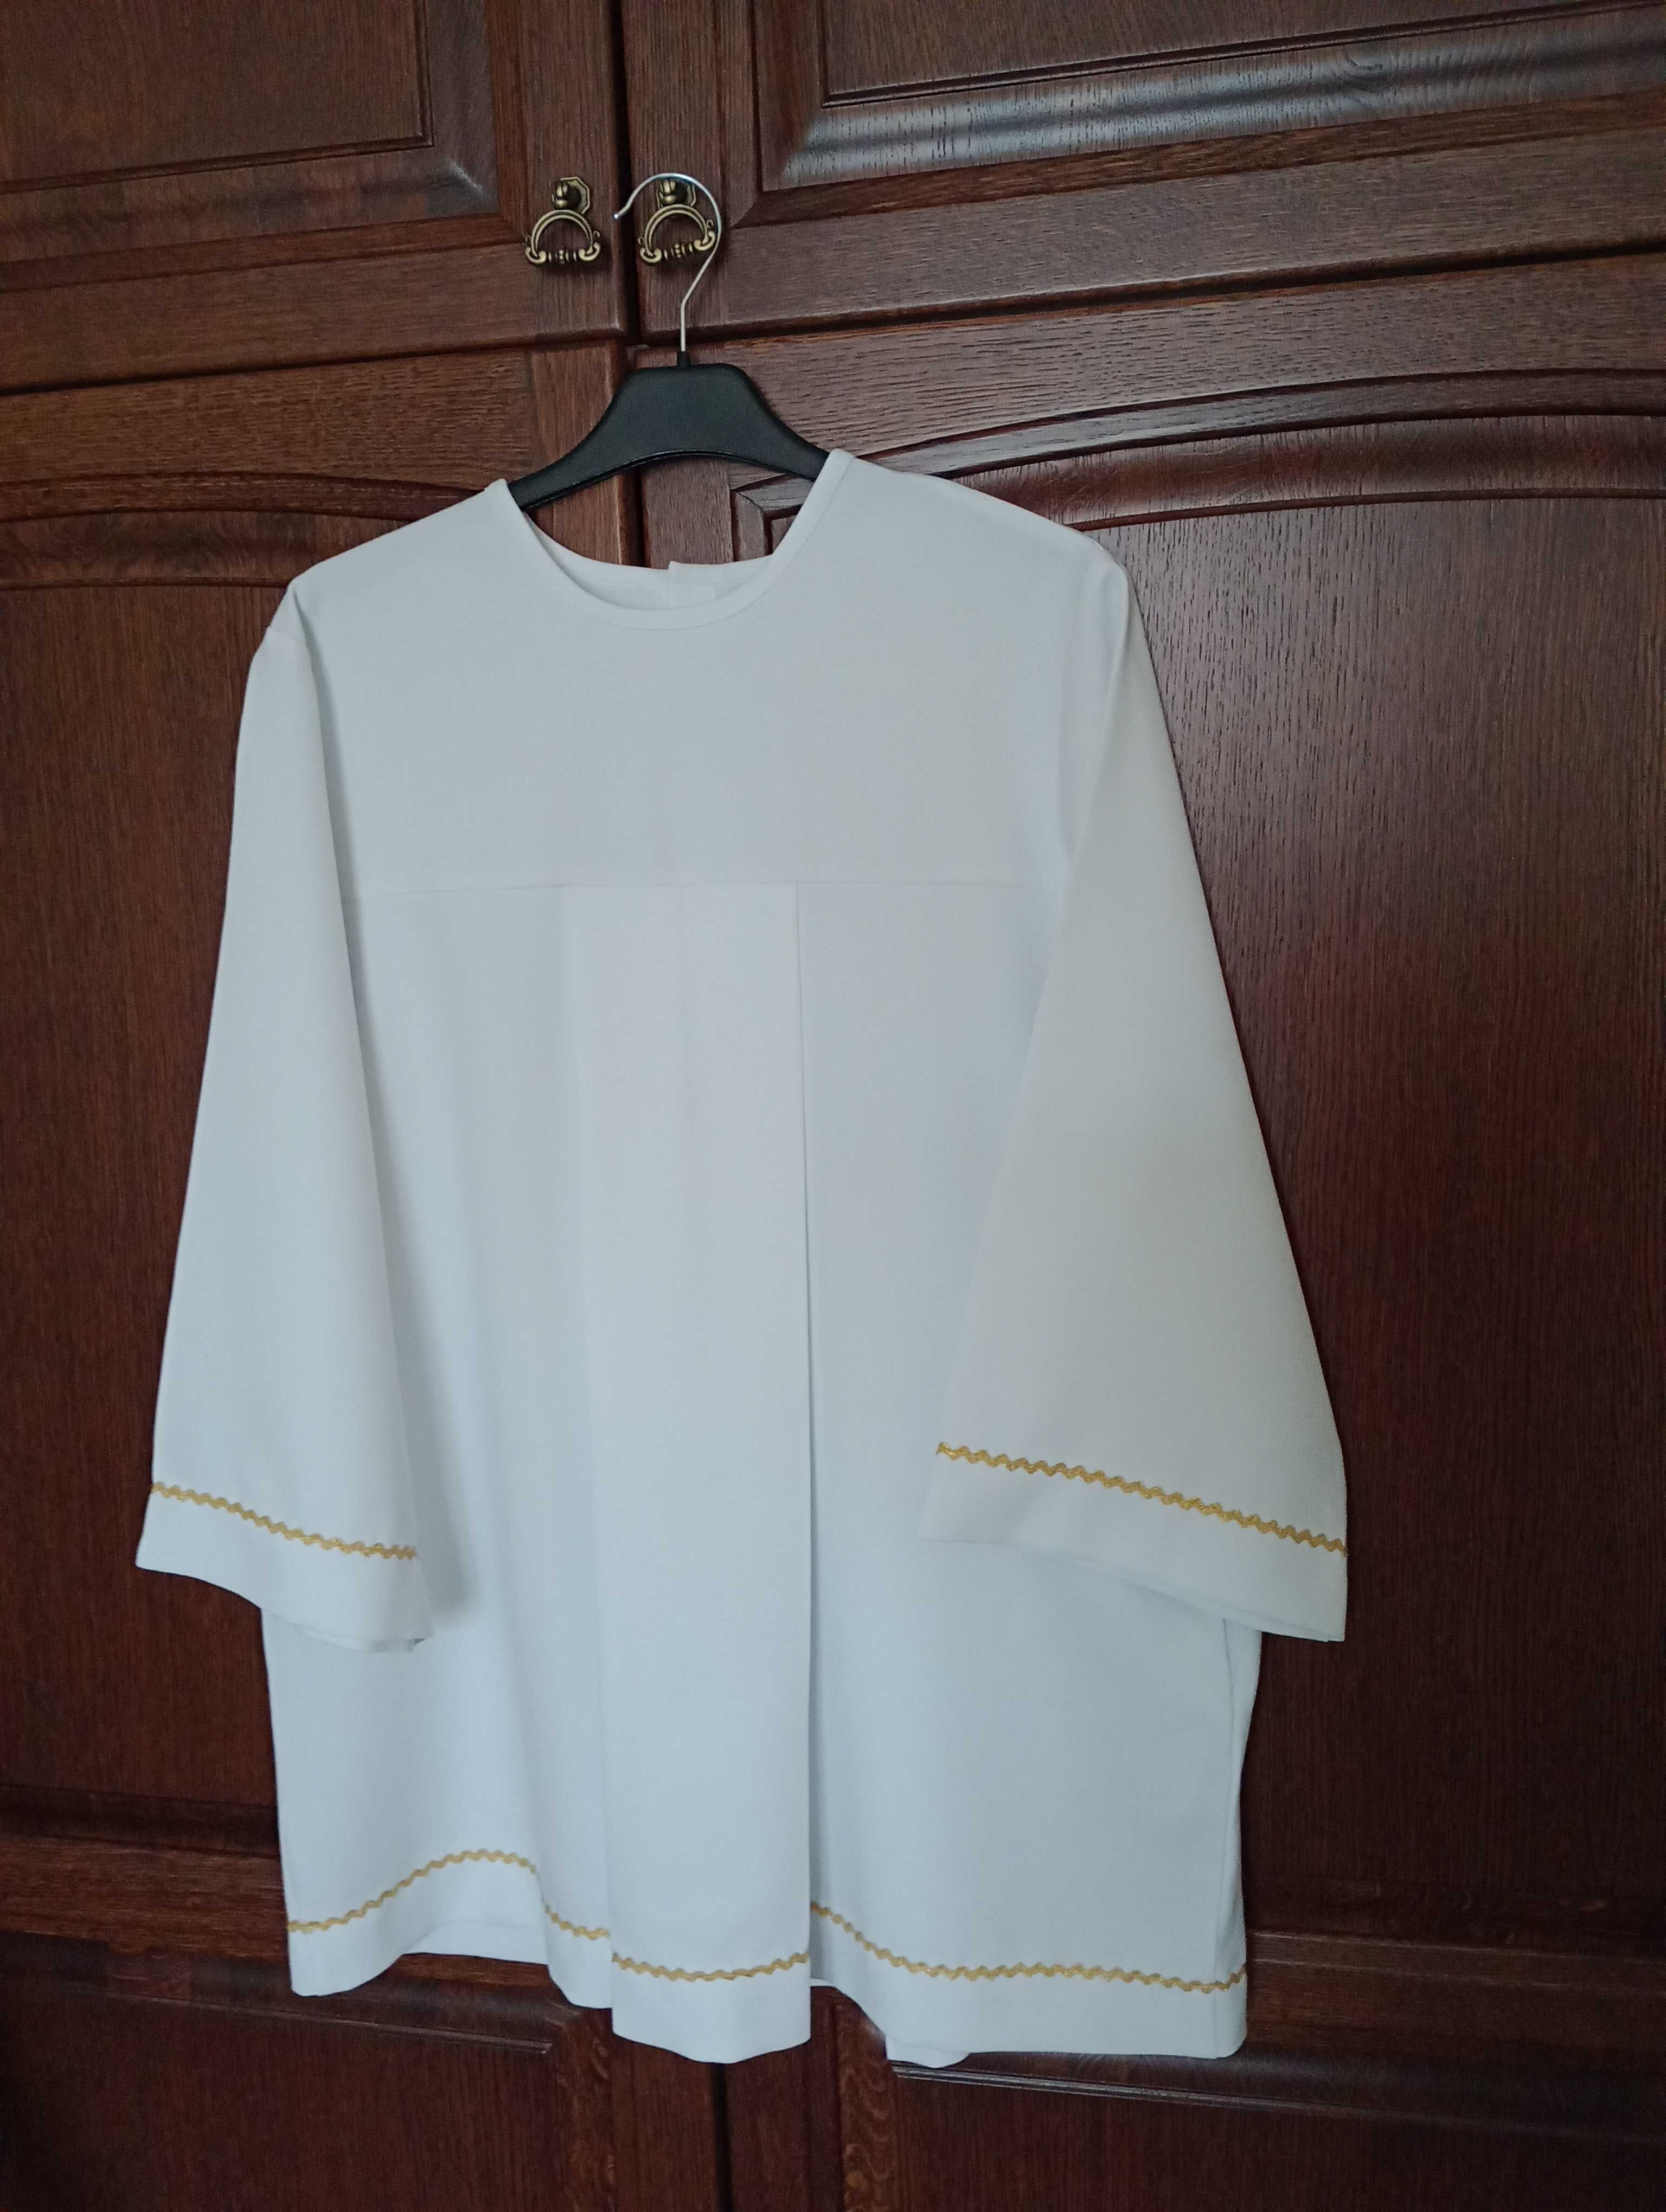 komża /komeżka/liturgiczny strój komunijny